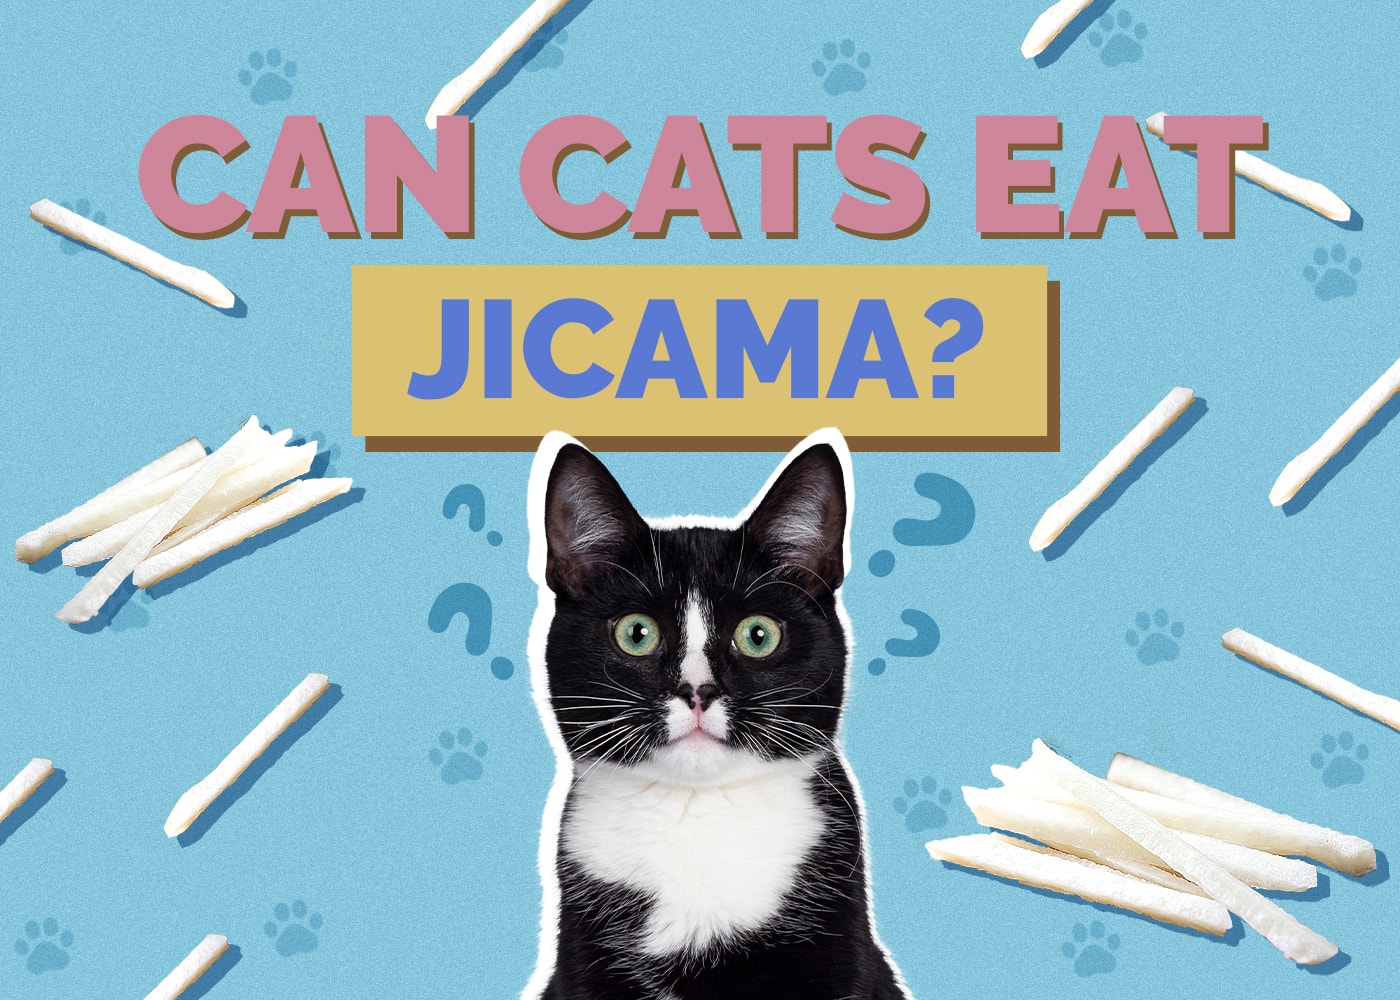 Can Cats Eat jicama